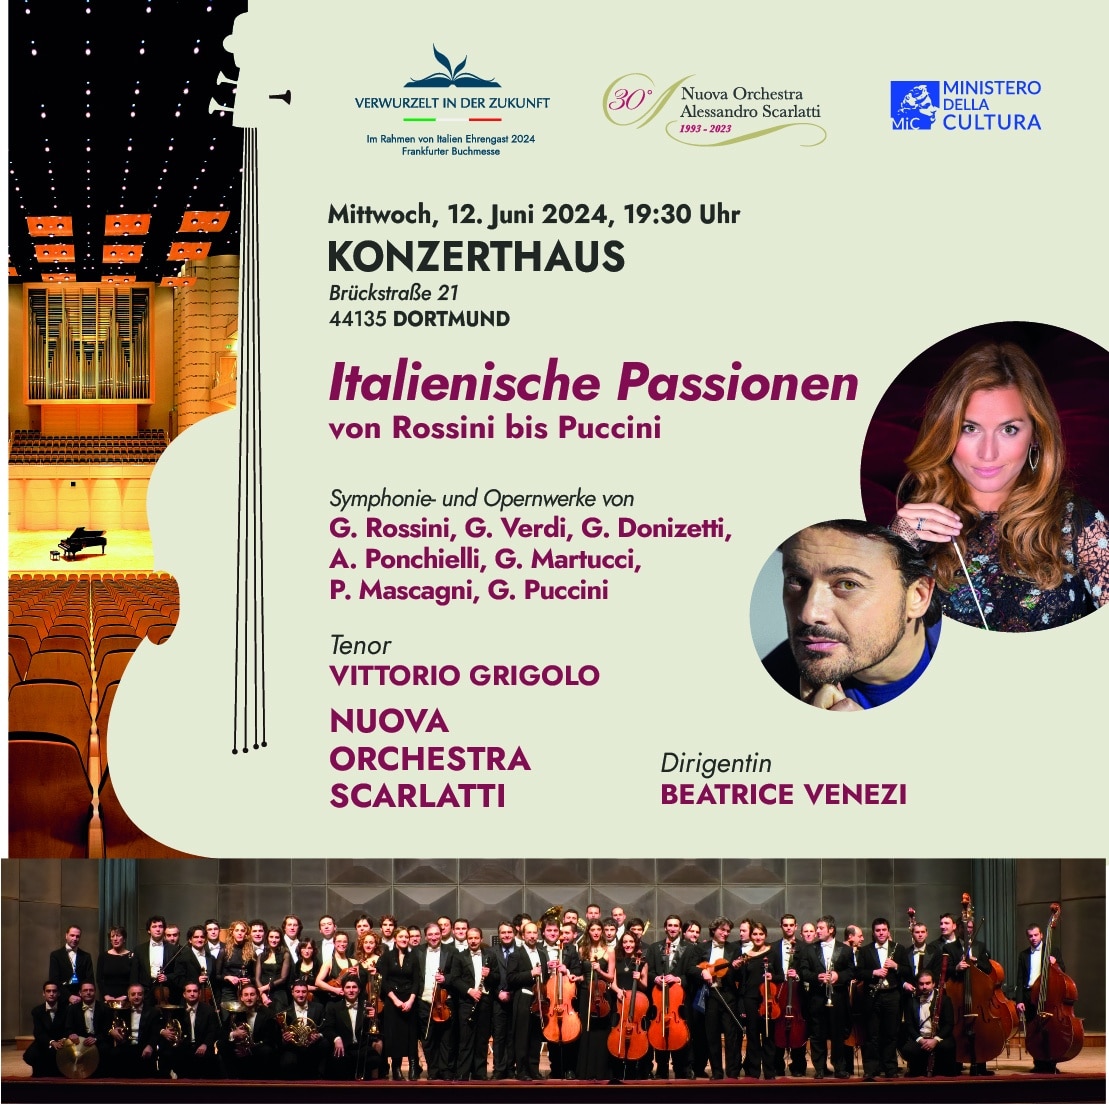 Nuova Orchestra Scarlatti im Konzerthaus Dortmund: Italienische Leidenschaften - von Rossini bis Puccini